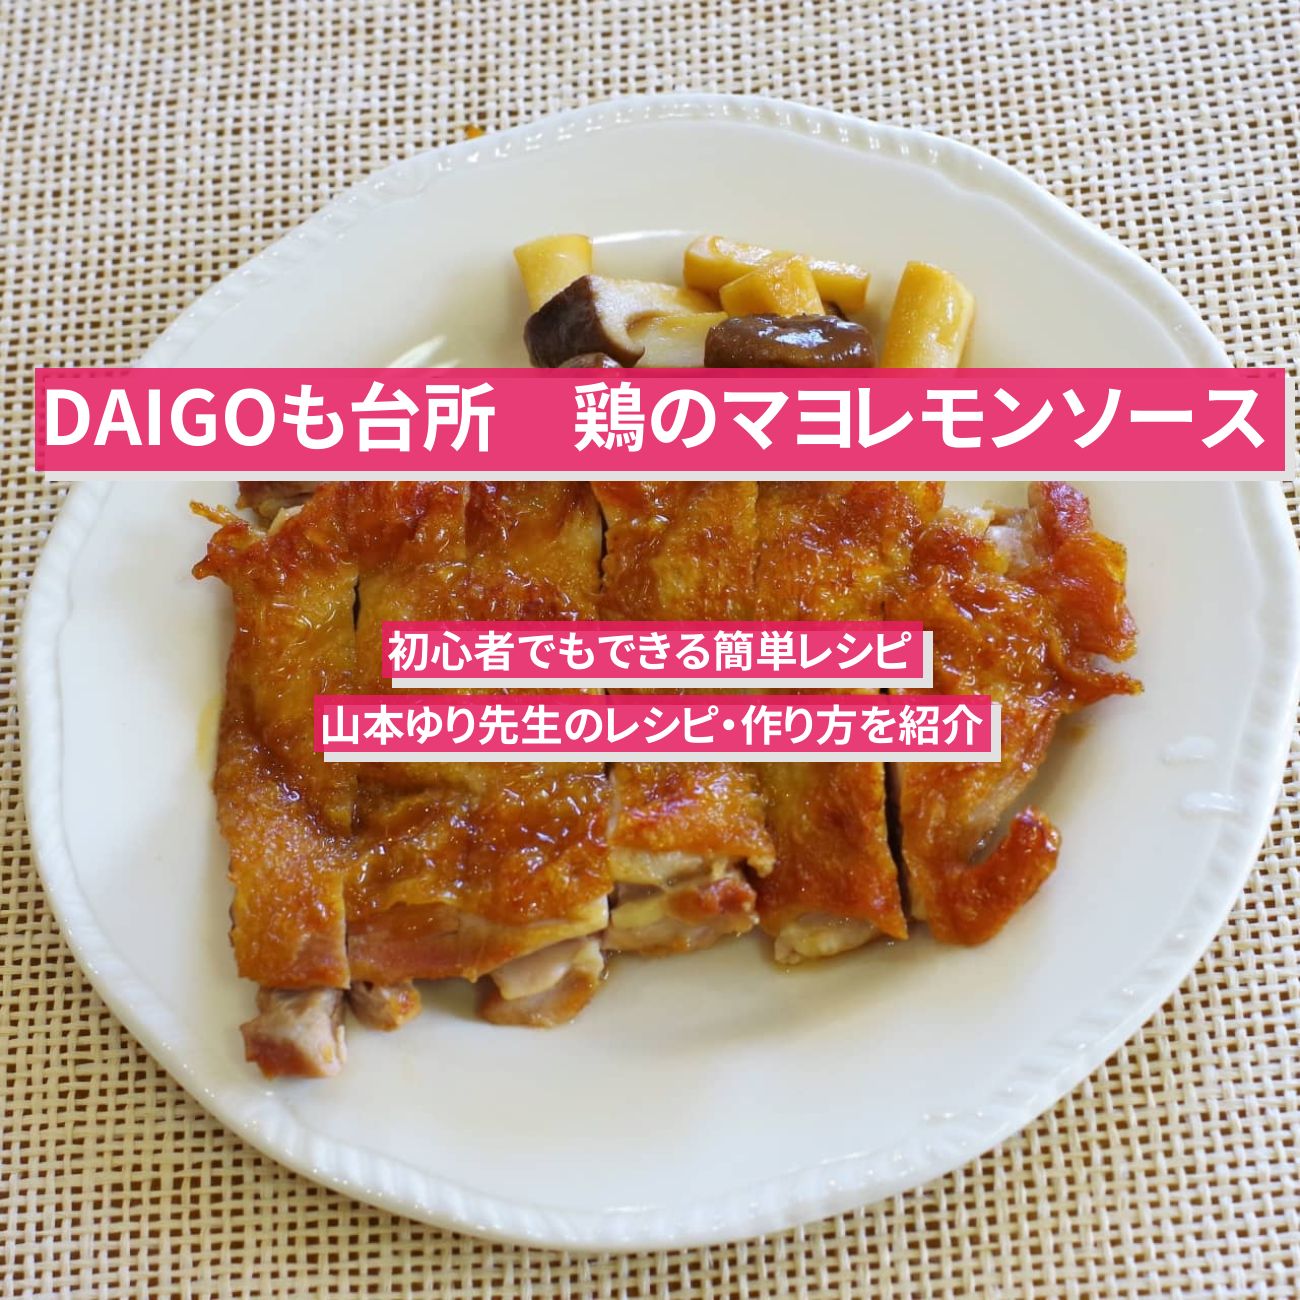 【DAIGOも台所】『鶏のマヨレモンソース』山本ゆり先生のレシピ・作り方を紹介〔ダイゴも台所〕